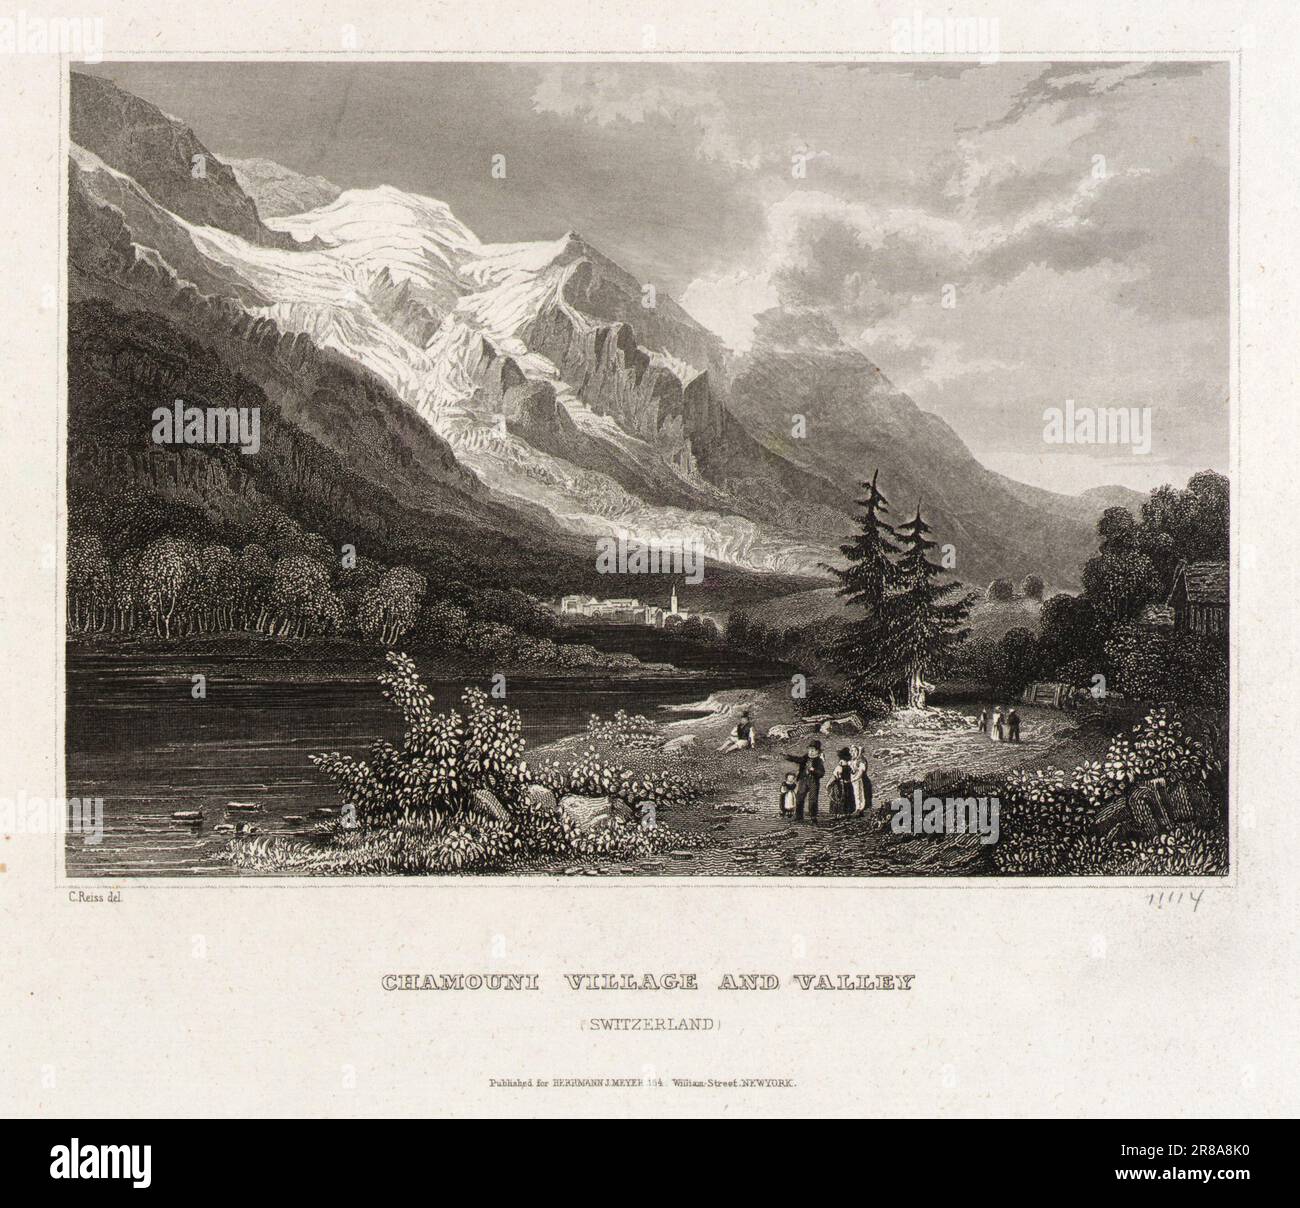 Chamounix Village and Valley n.d. von C. Reiss, Swiss, n.d. Stockfoto